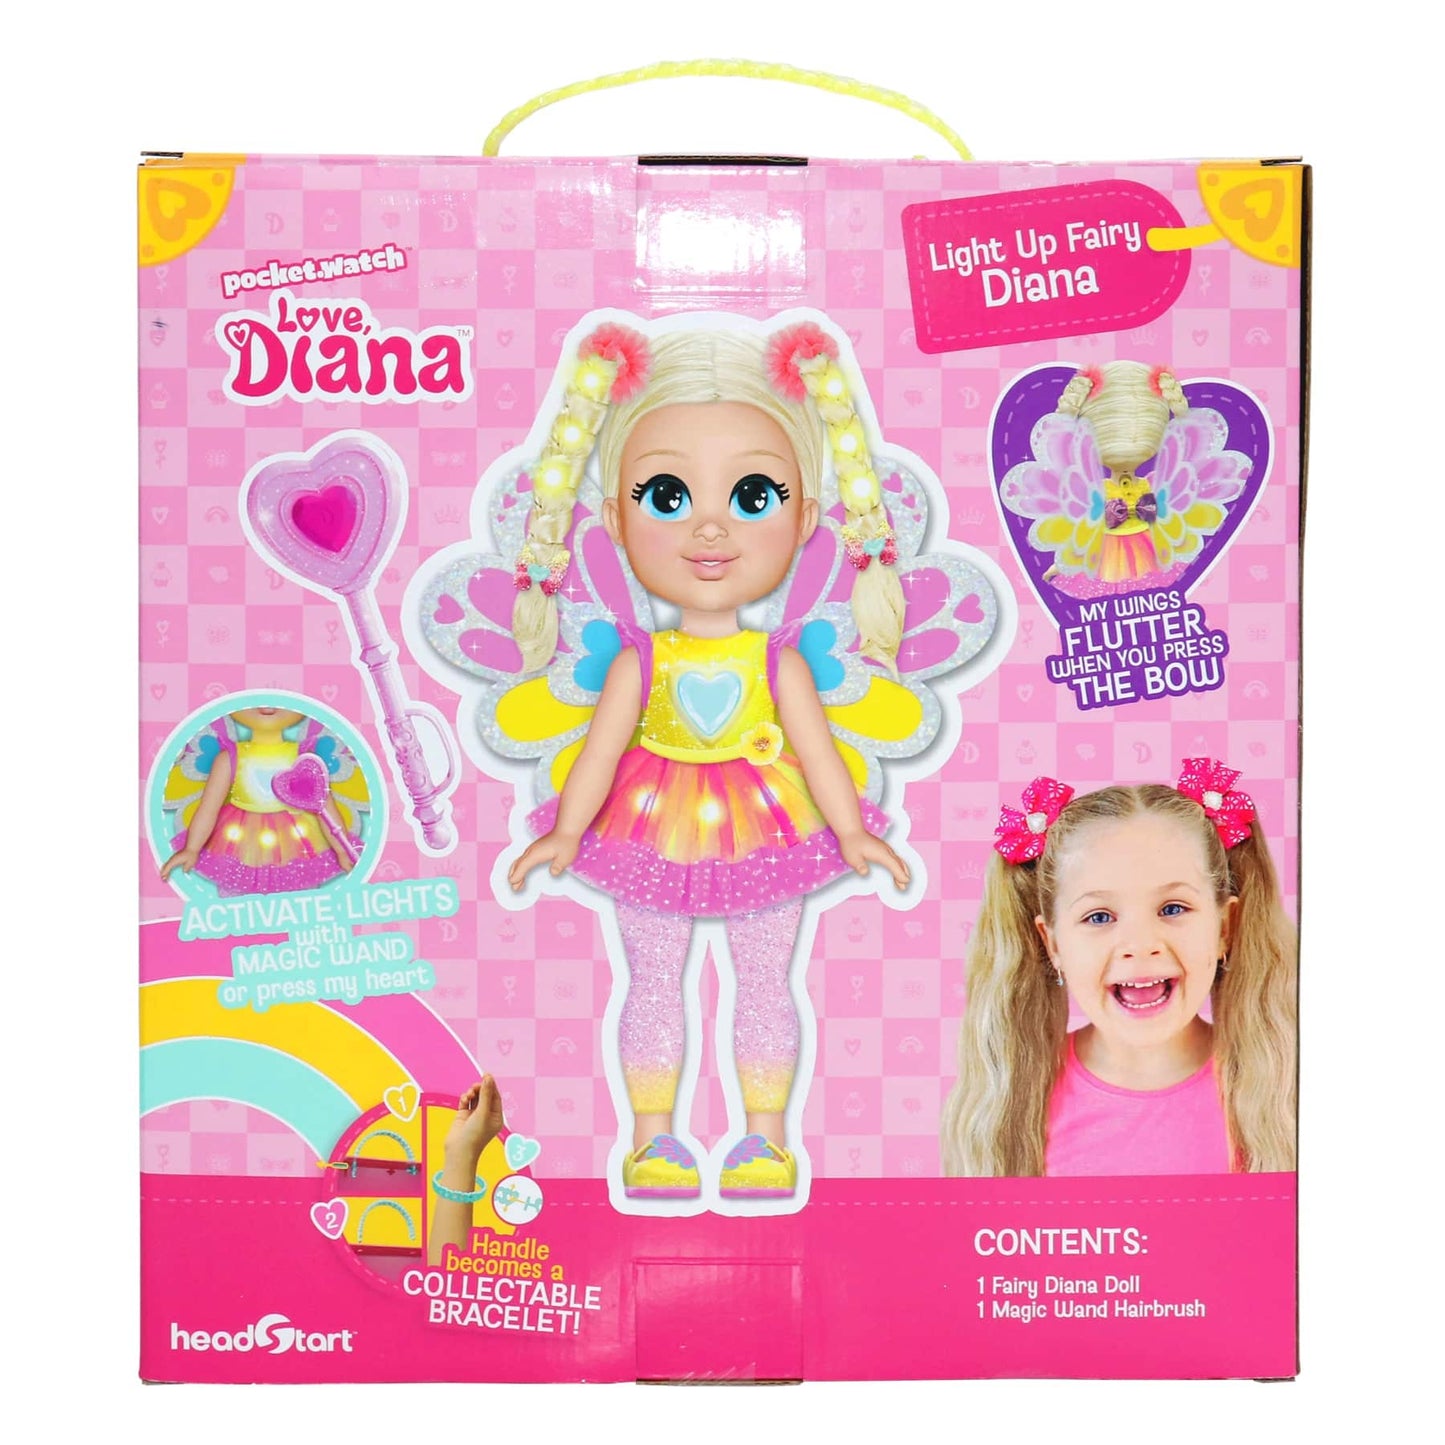 Love Diana Light Up Fairy Doll (33 cm)